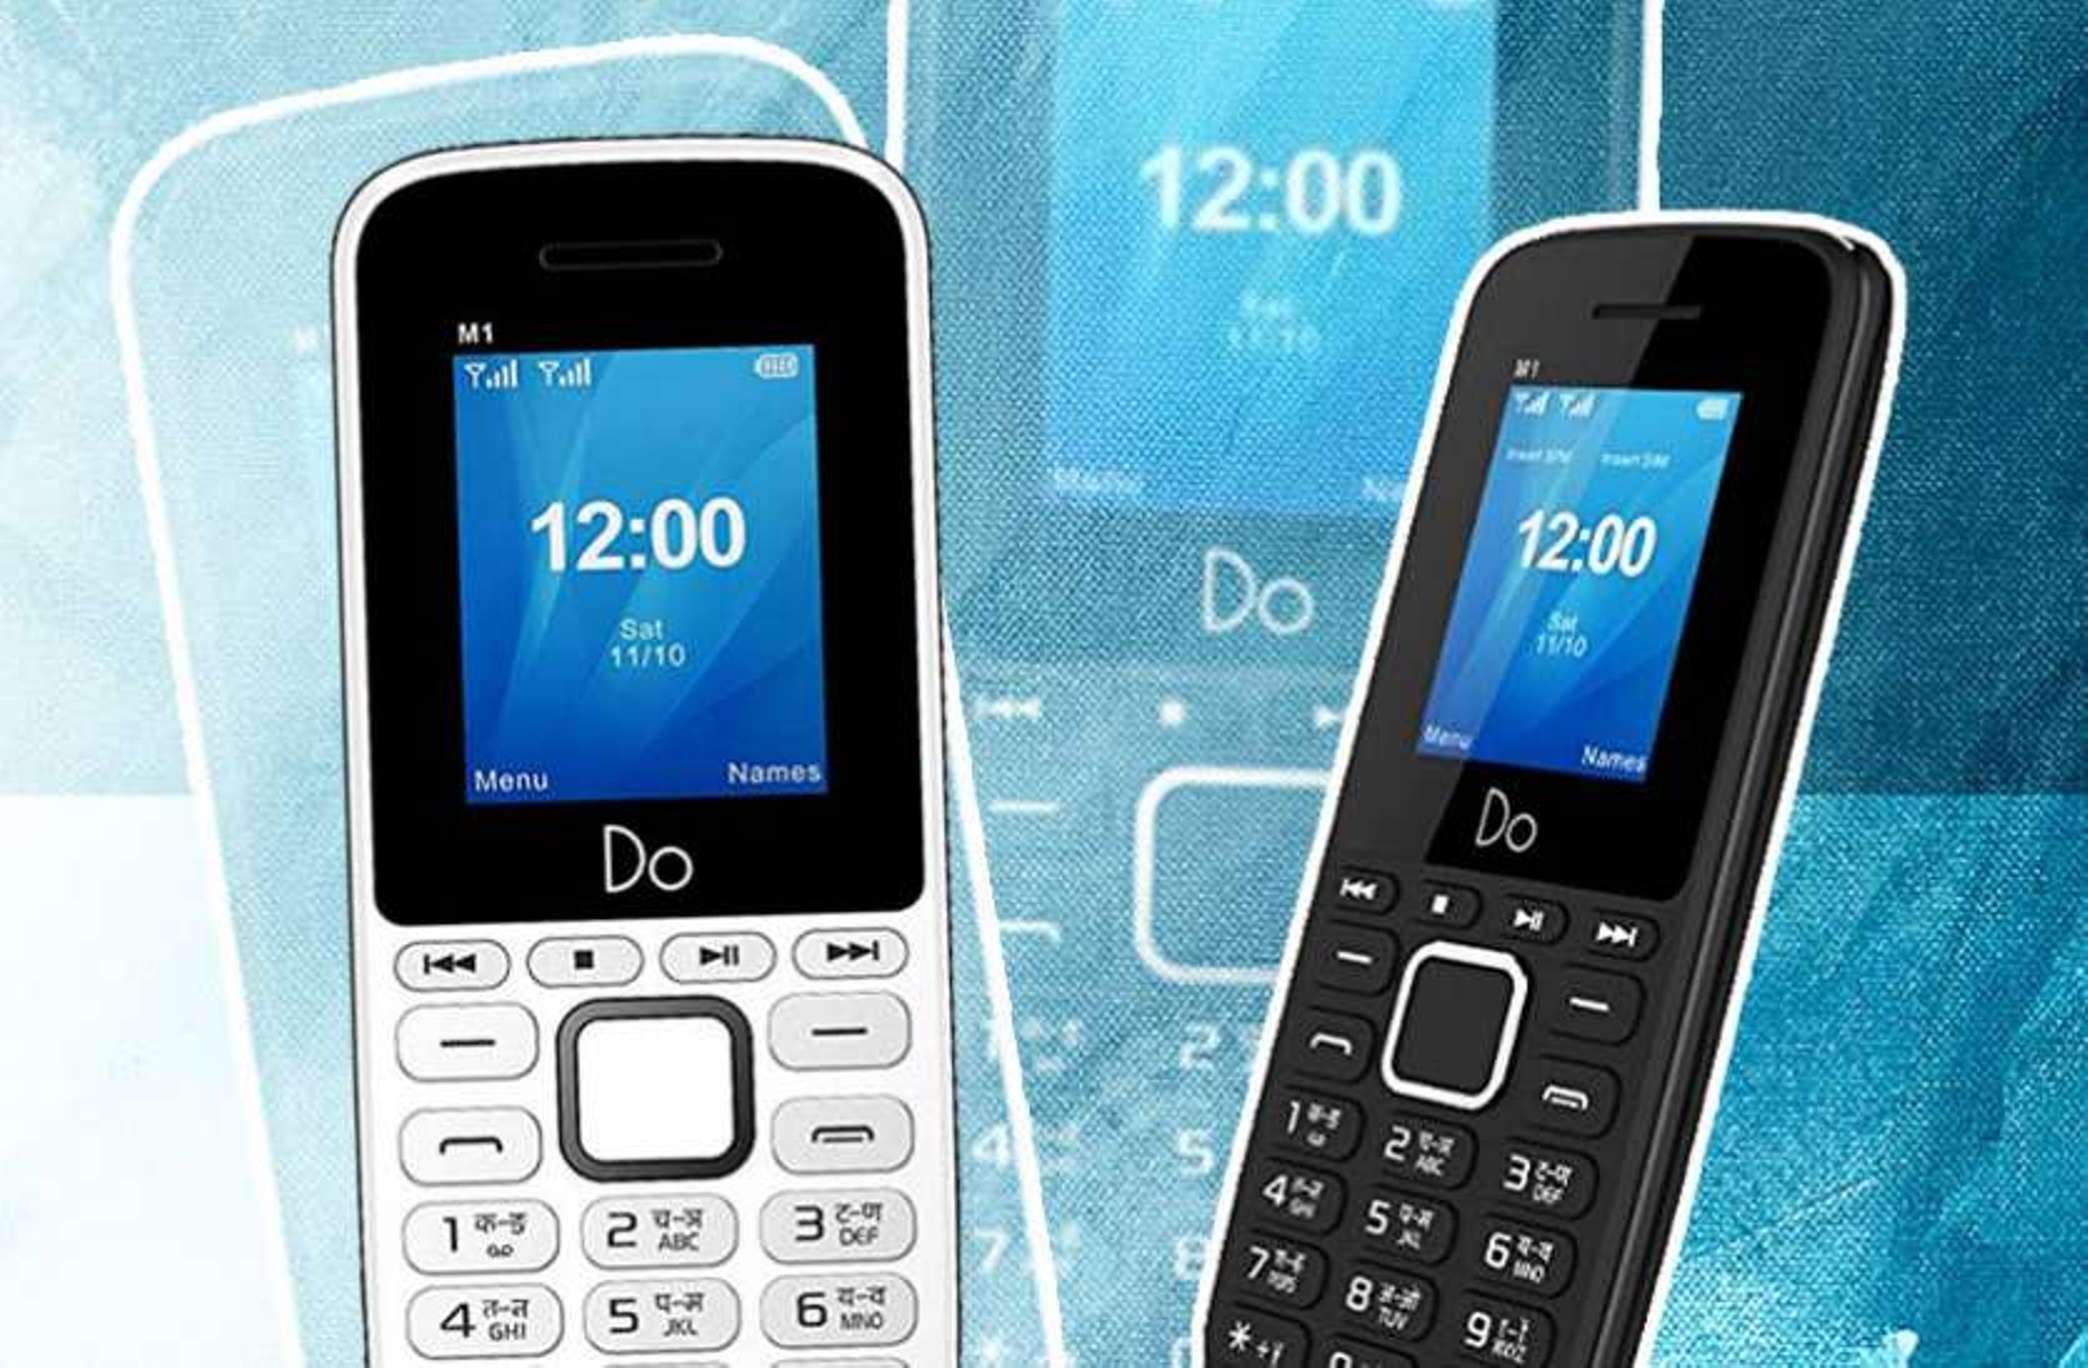 डू मोबाइल 1299 रुपये में लेकर आया स्टायलिश फीचर फोन एम22